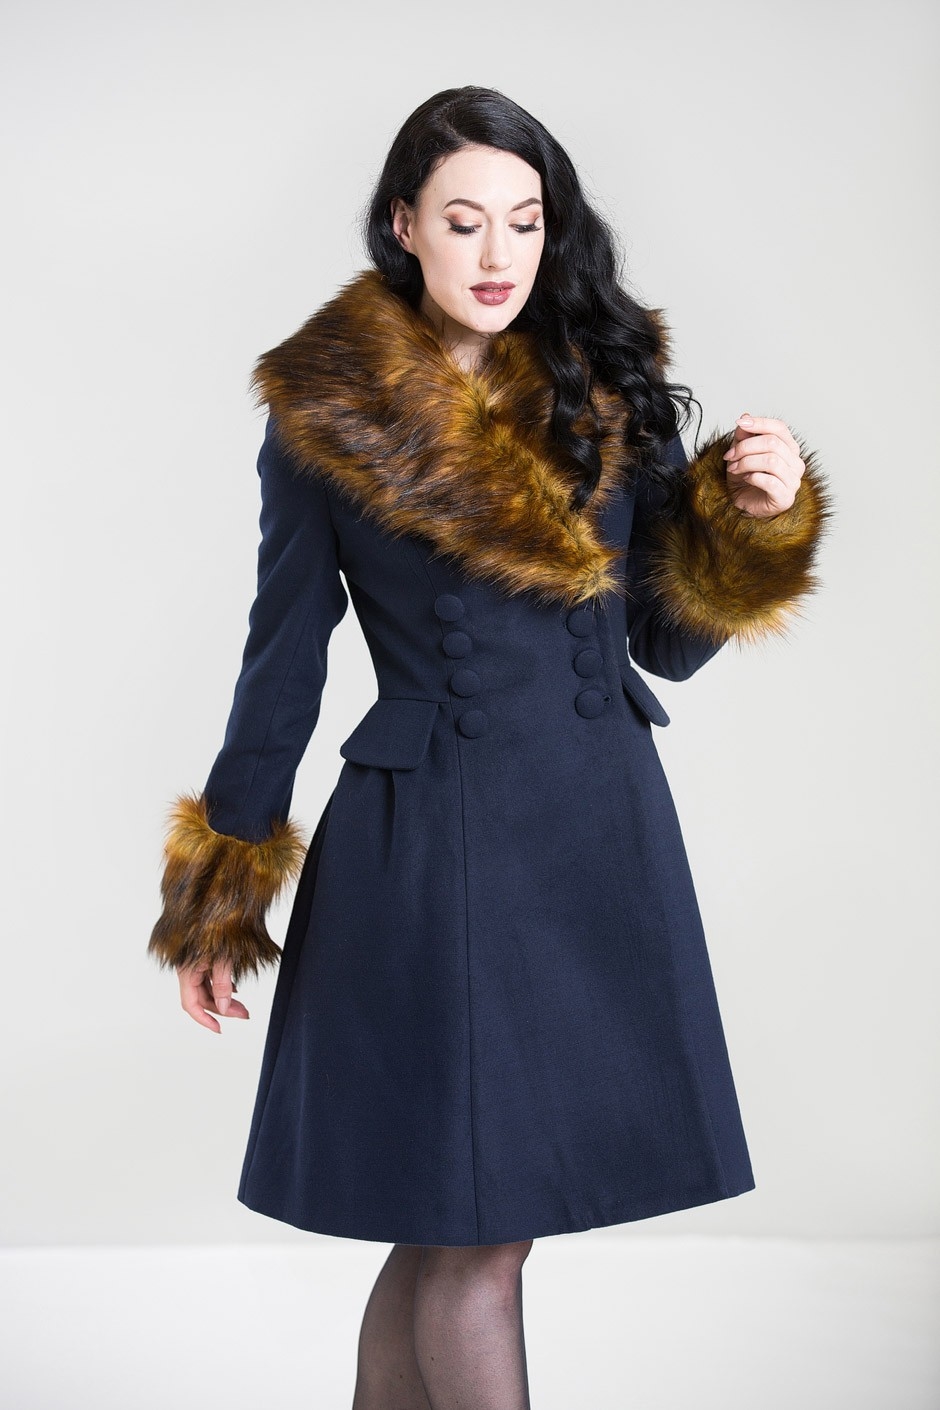 Roxy, coat: Lækker varm og feminin frakke i mørkeblå med sød pelskrave - fantastisk frakke, vi når der er gjort noget af det.